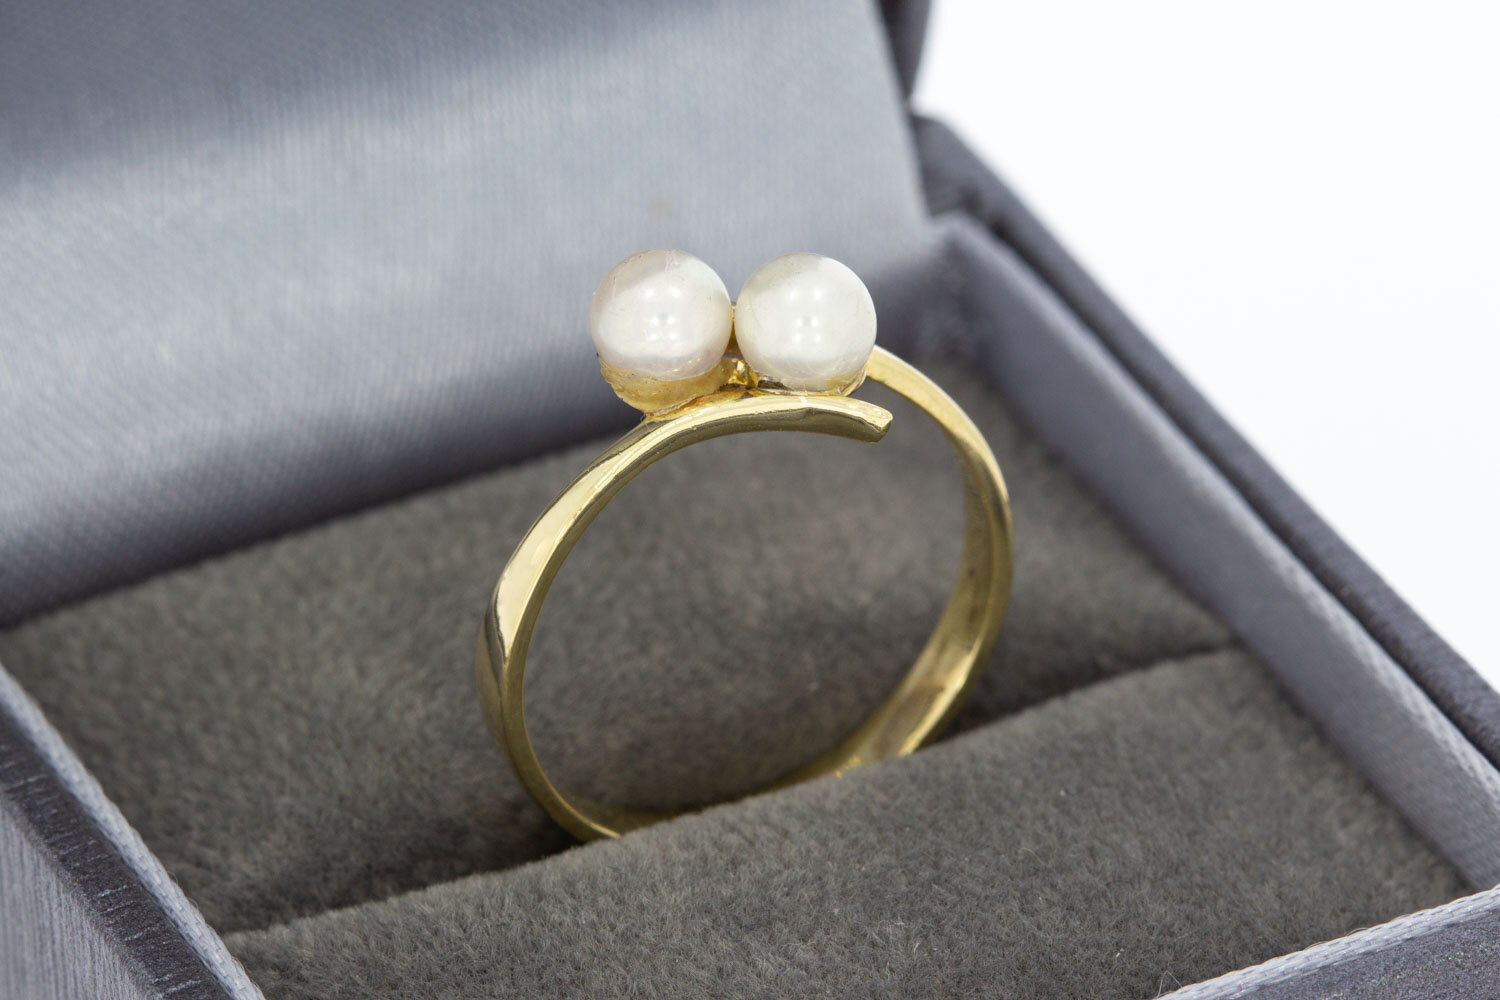 Geschwungene Ring 585 Gold mit Perlen - 17,3 mm